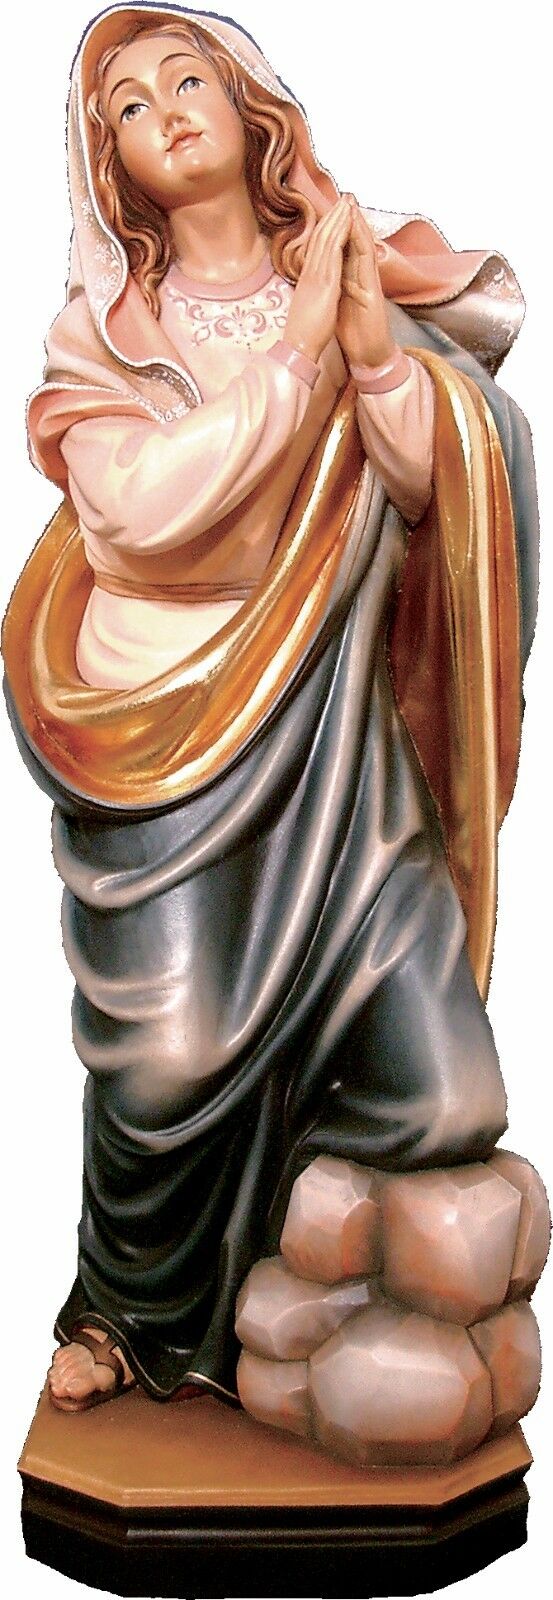 Stupenda SculturaStatua Santa PATRICIA in legno,<br />St PATRICIA wooden Statue<br /> Nuovo. New Legno scolpita a mano Wood Carved